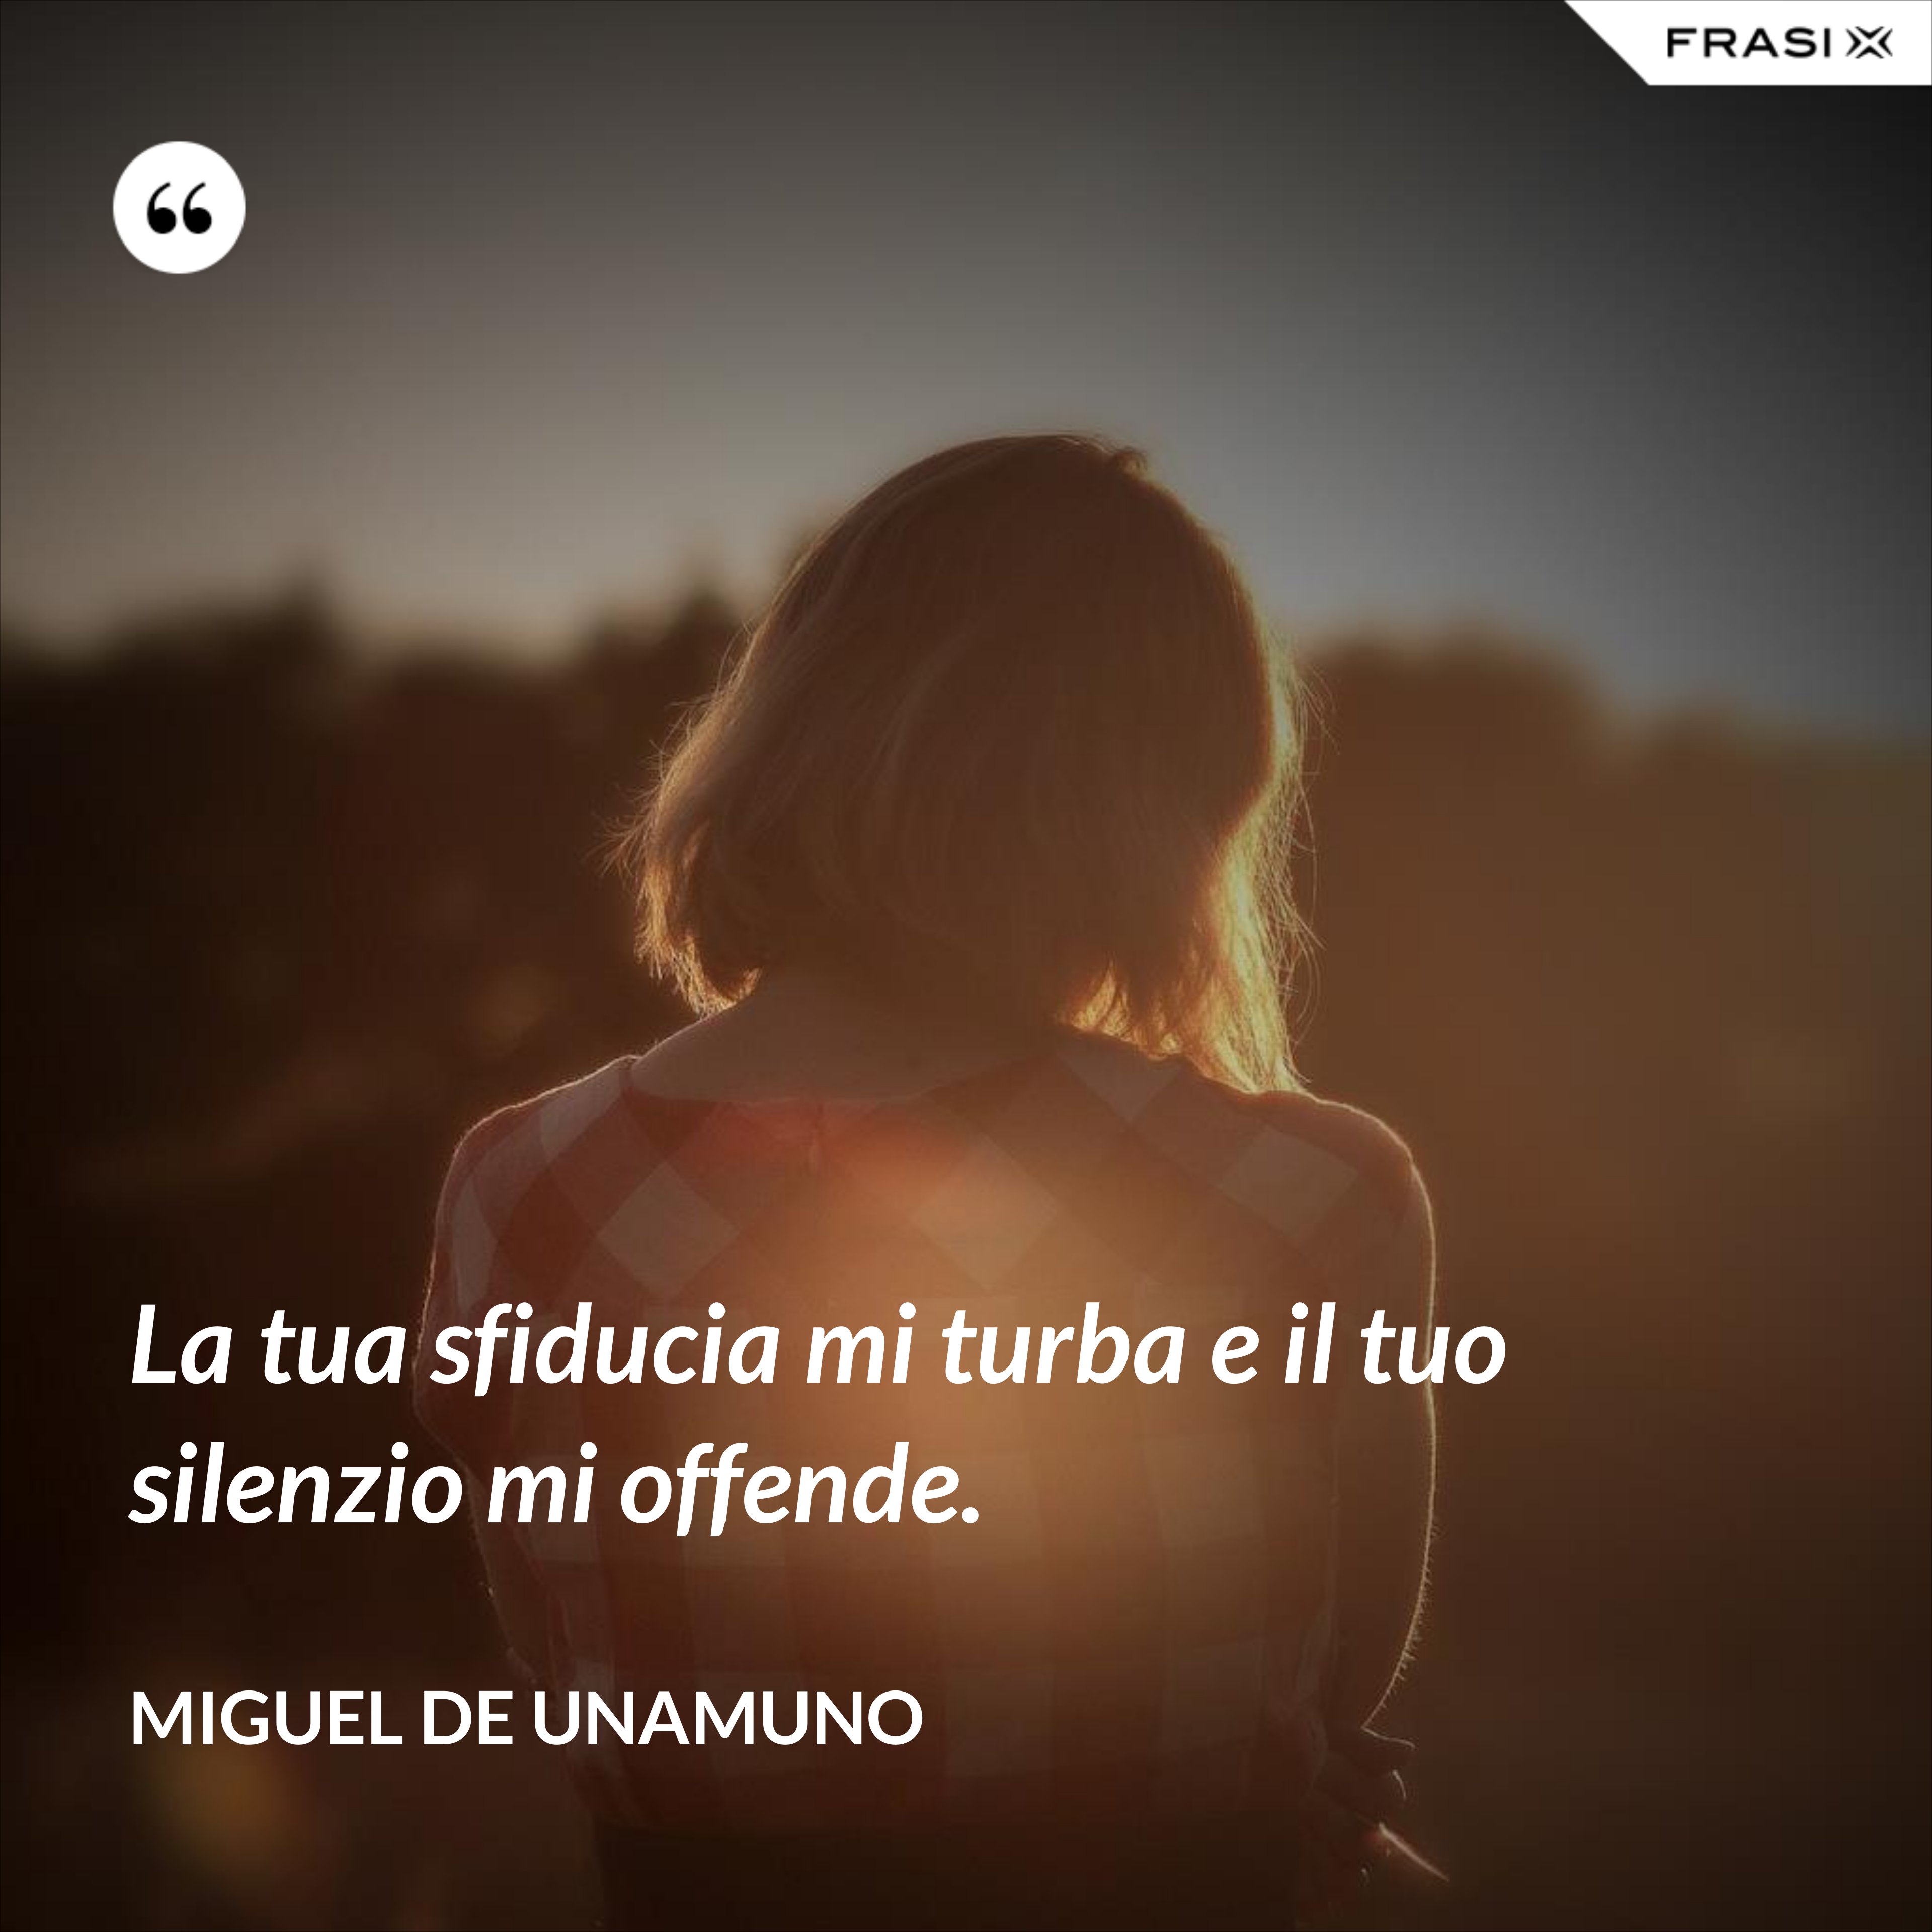 La tua sfiducia mi turba e il tuo silenzio mi offende. - Miguel de Unamuno